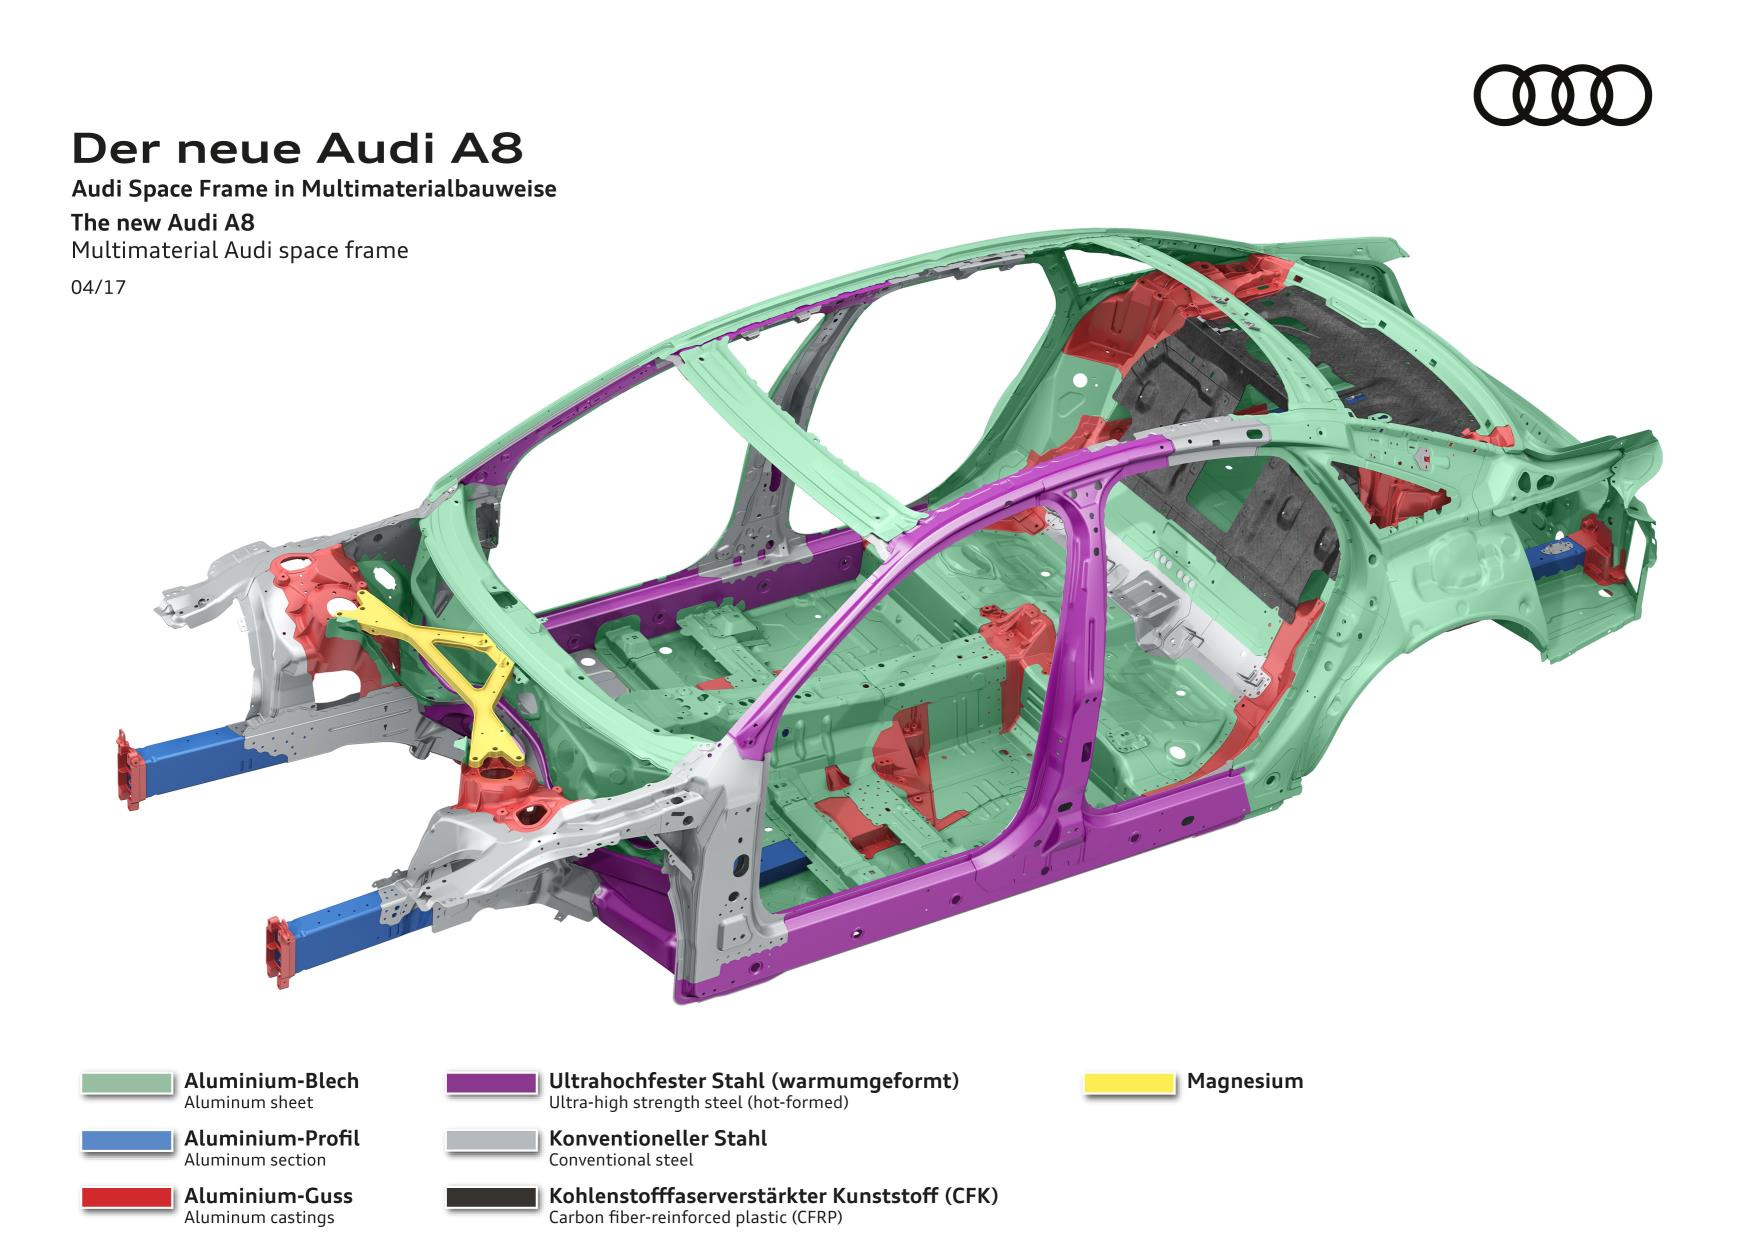 Desarrollo de carrocerías en AUDI: Innovación, calidad y precisión